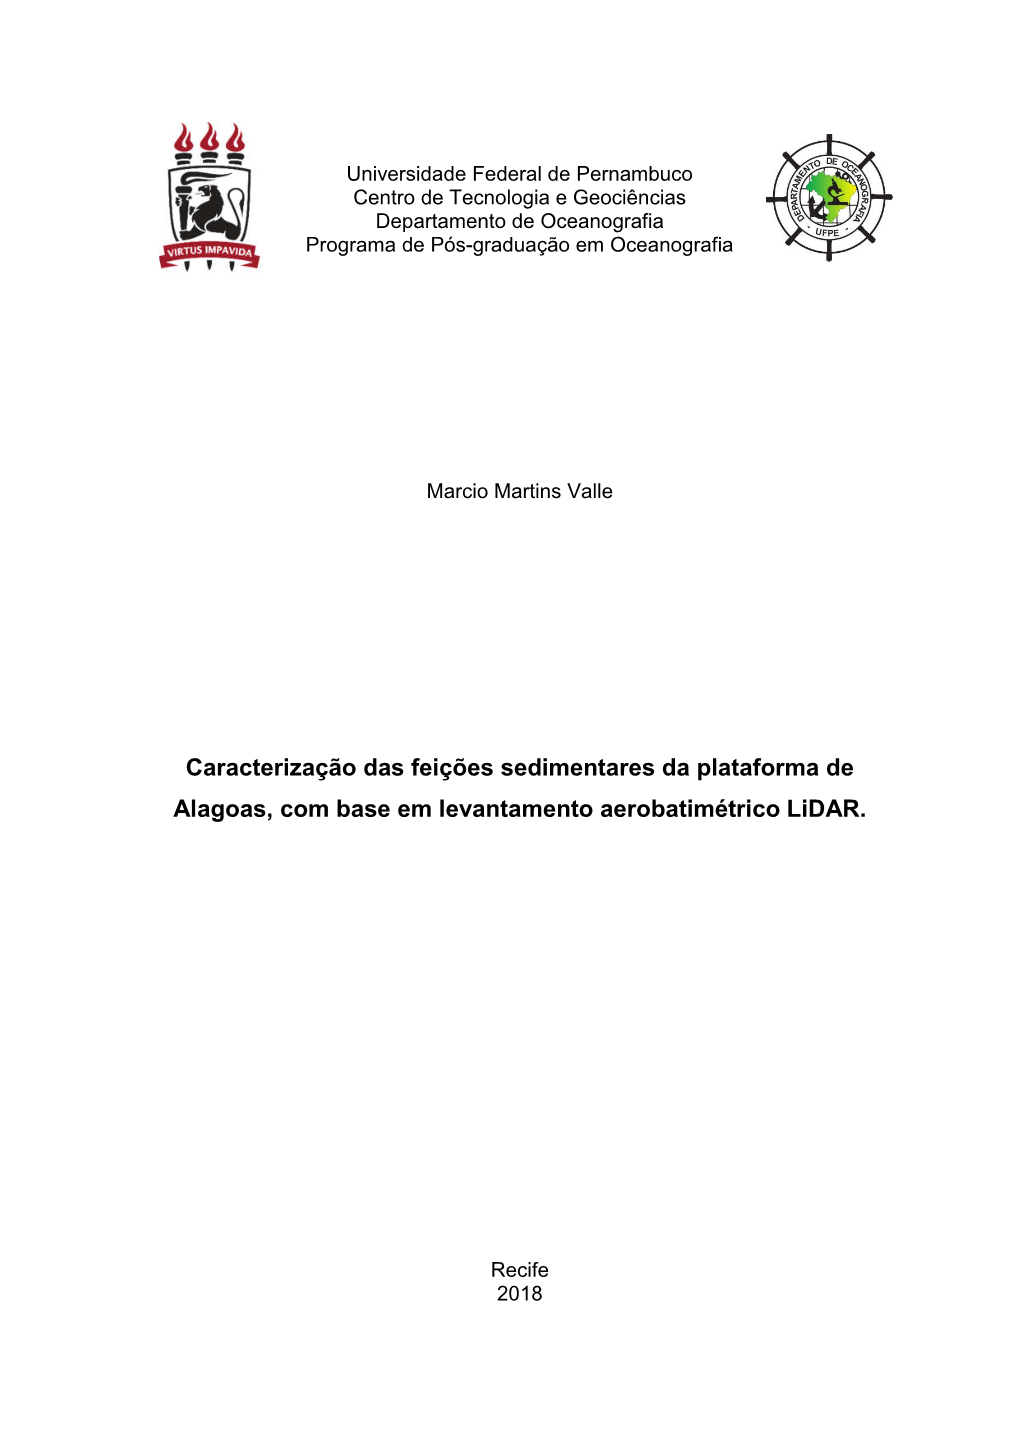 Caracterização Das Feições Sedimentares Da Plataforma De Alagoas, Com Base Em Levantamento Aerobatimétrico Lidar